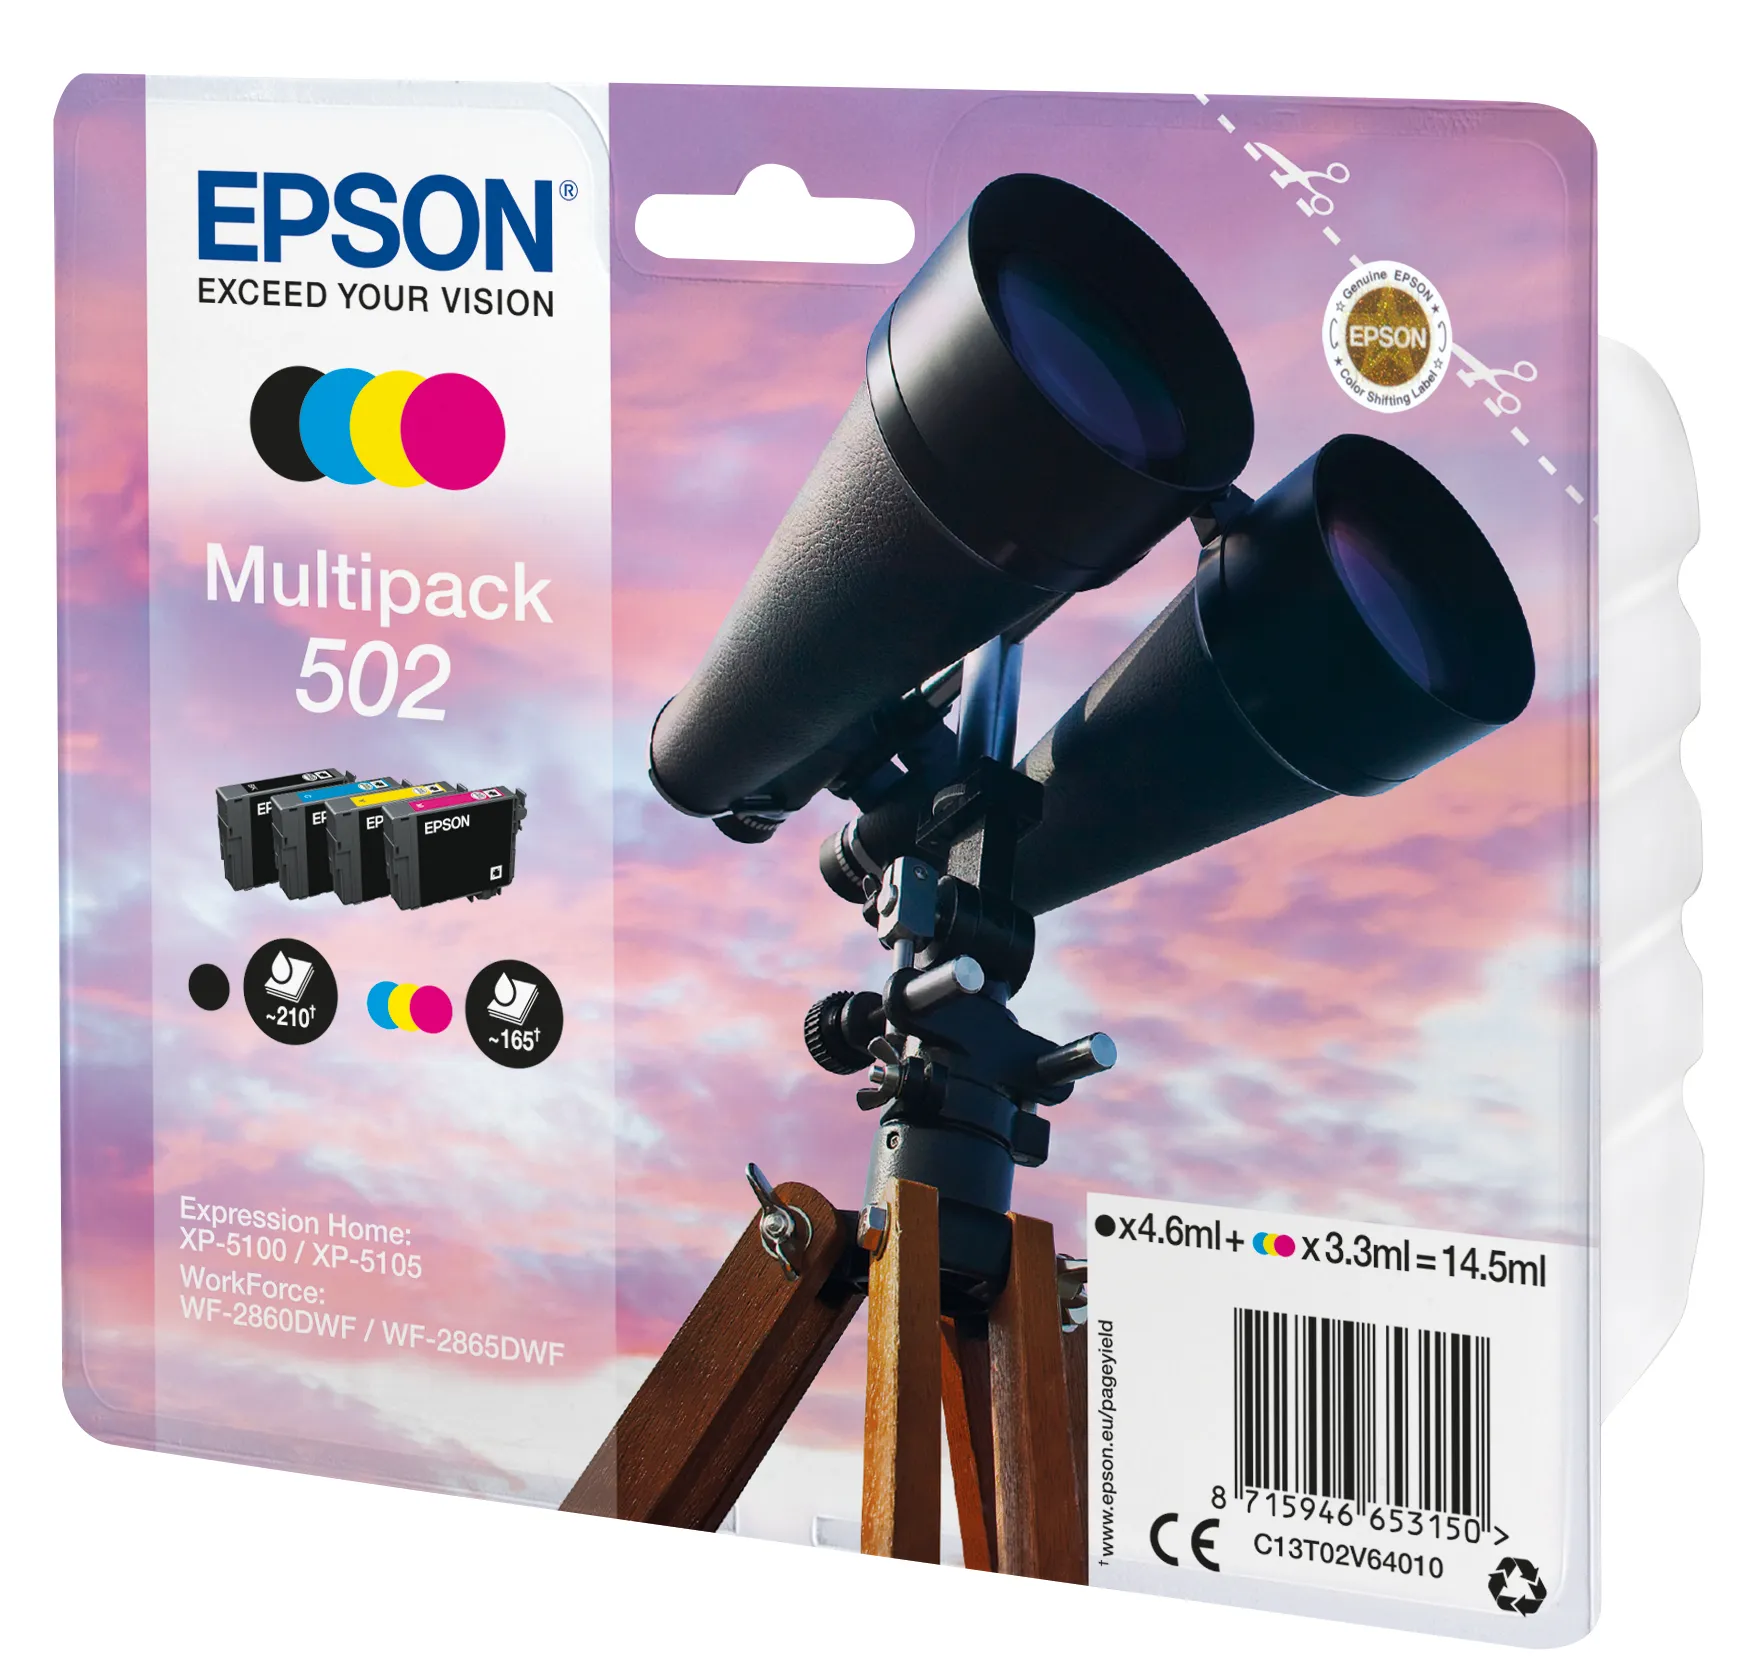 Vente EPSON Multipack 4-colours 502 Ink SEC Epson au meilleur prix - visuel 4